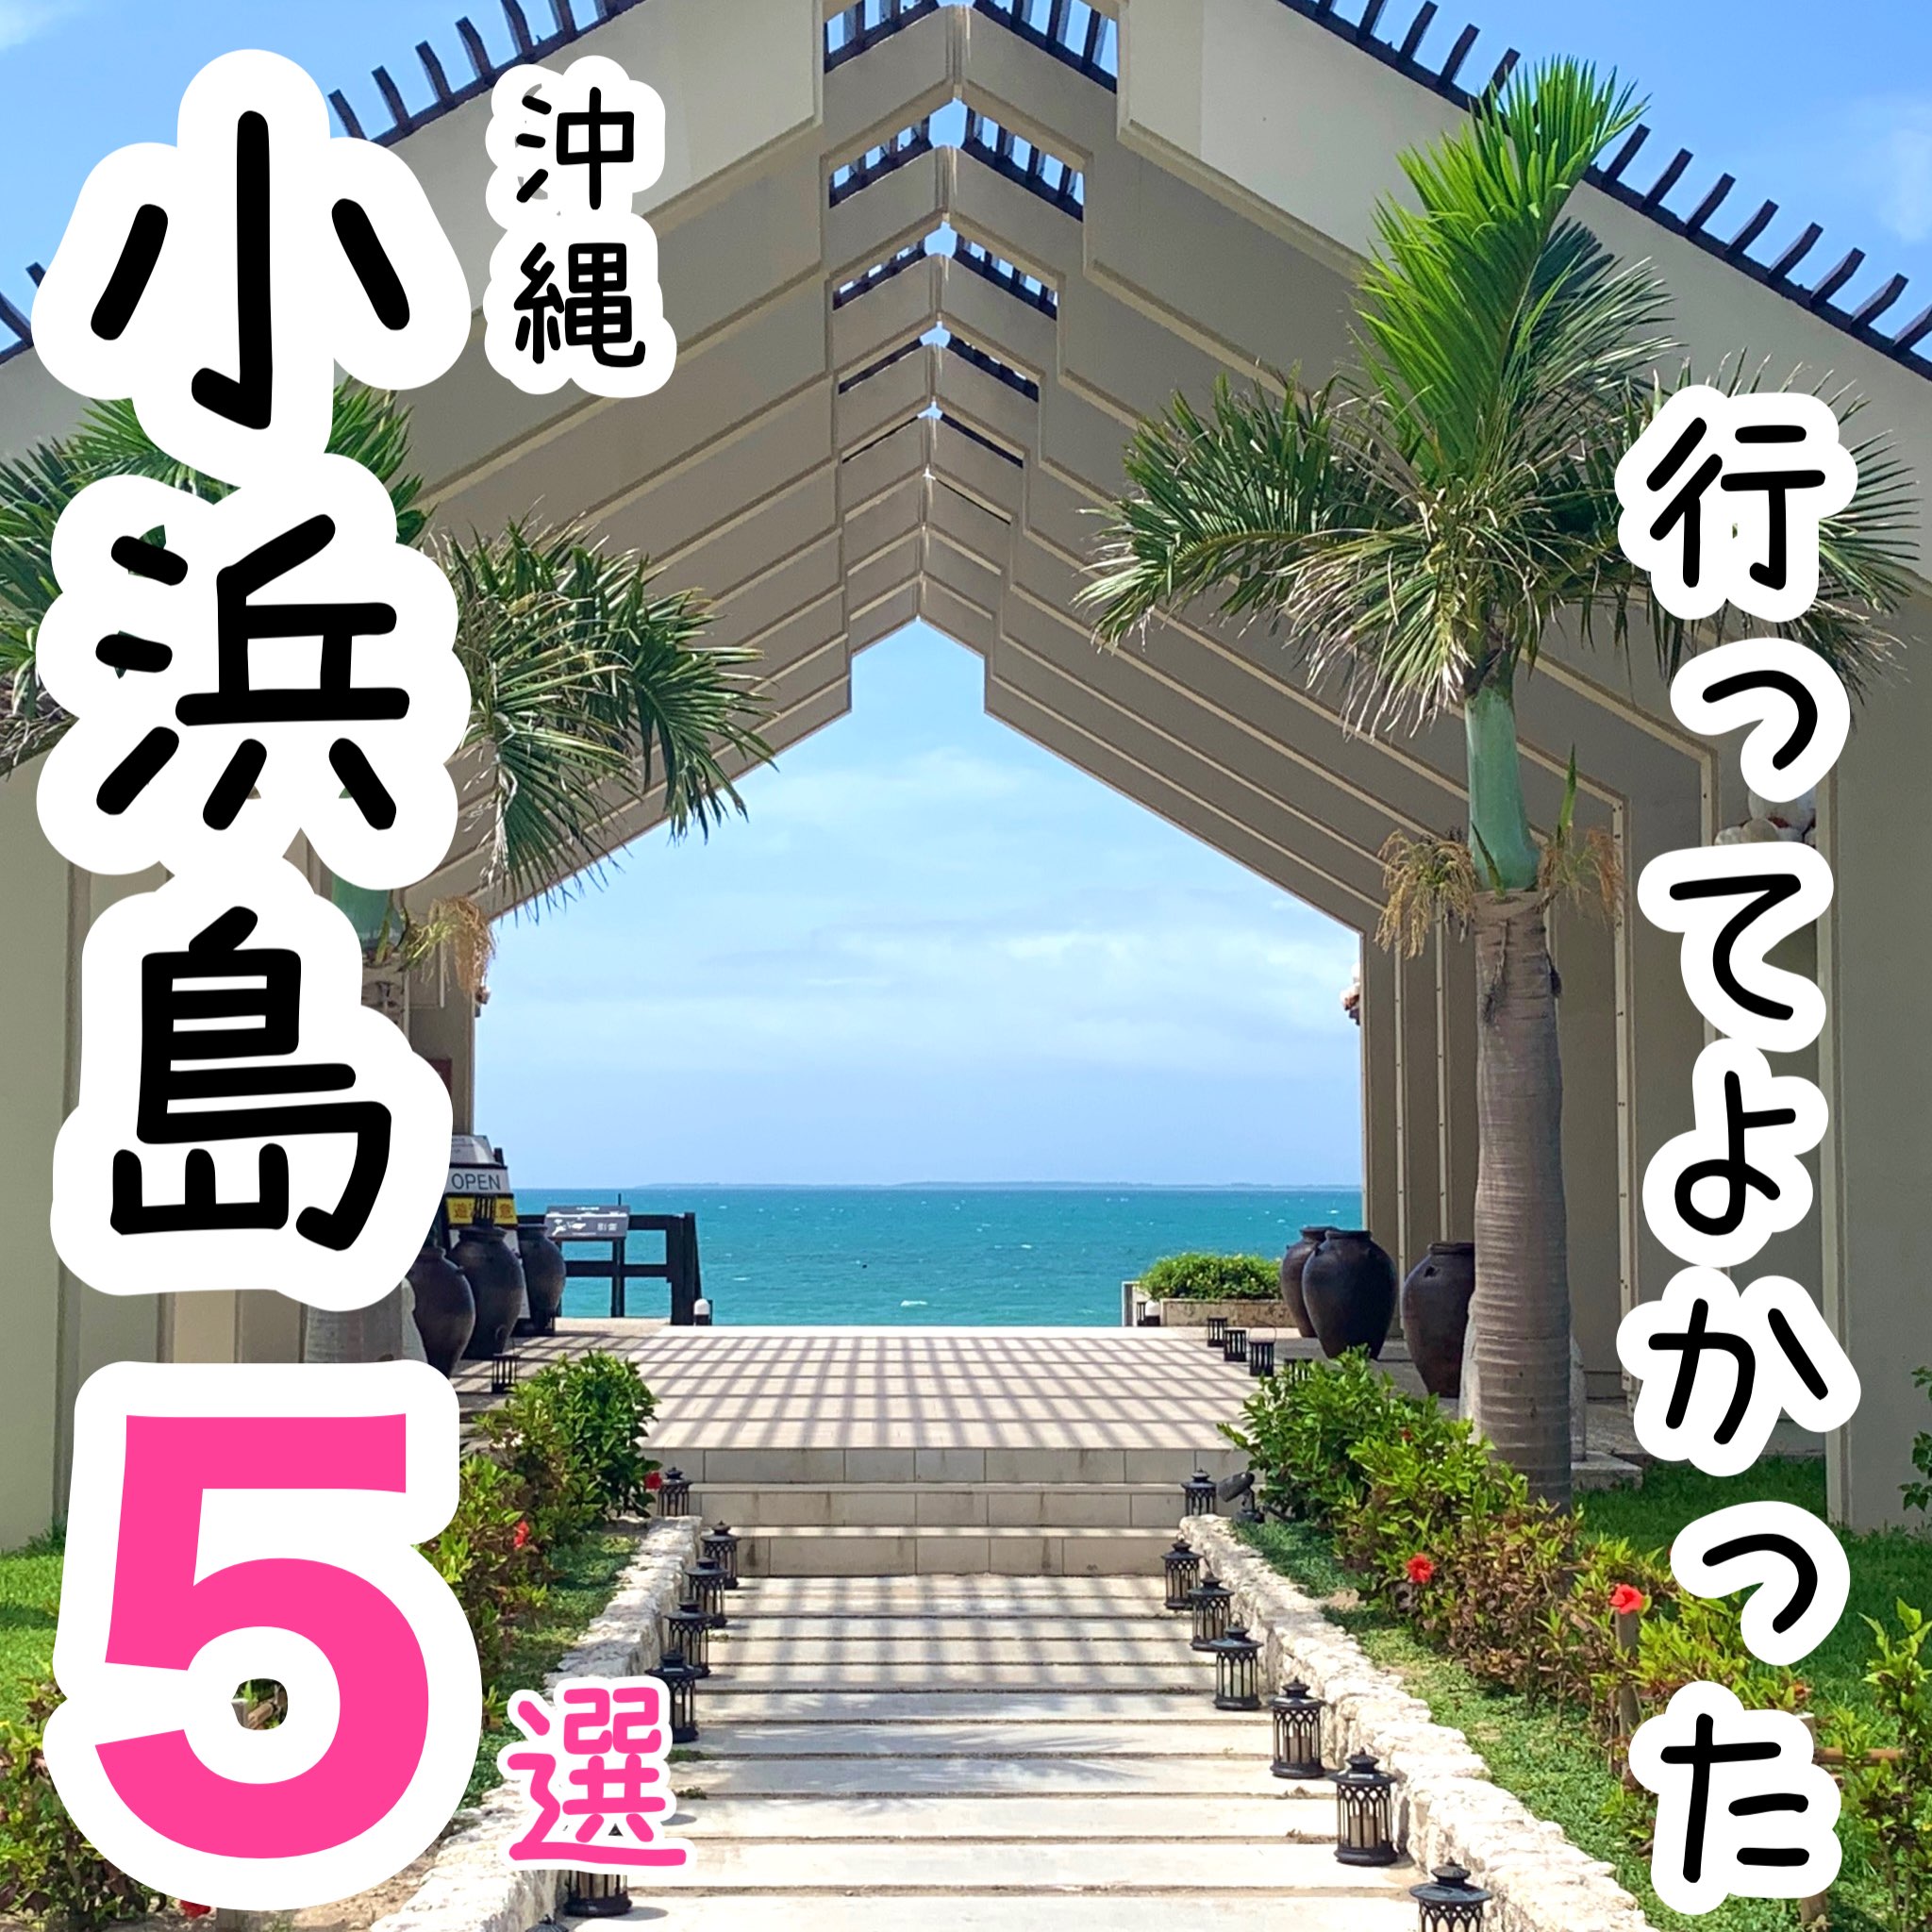 【冲绳】去过好去的小滨岛的观光地5选